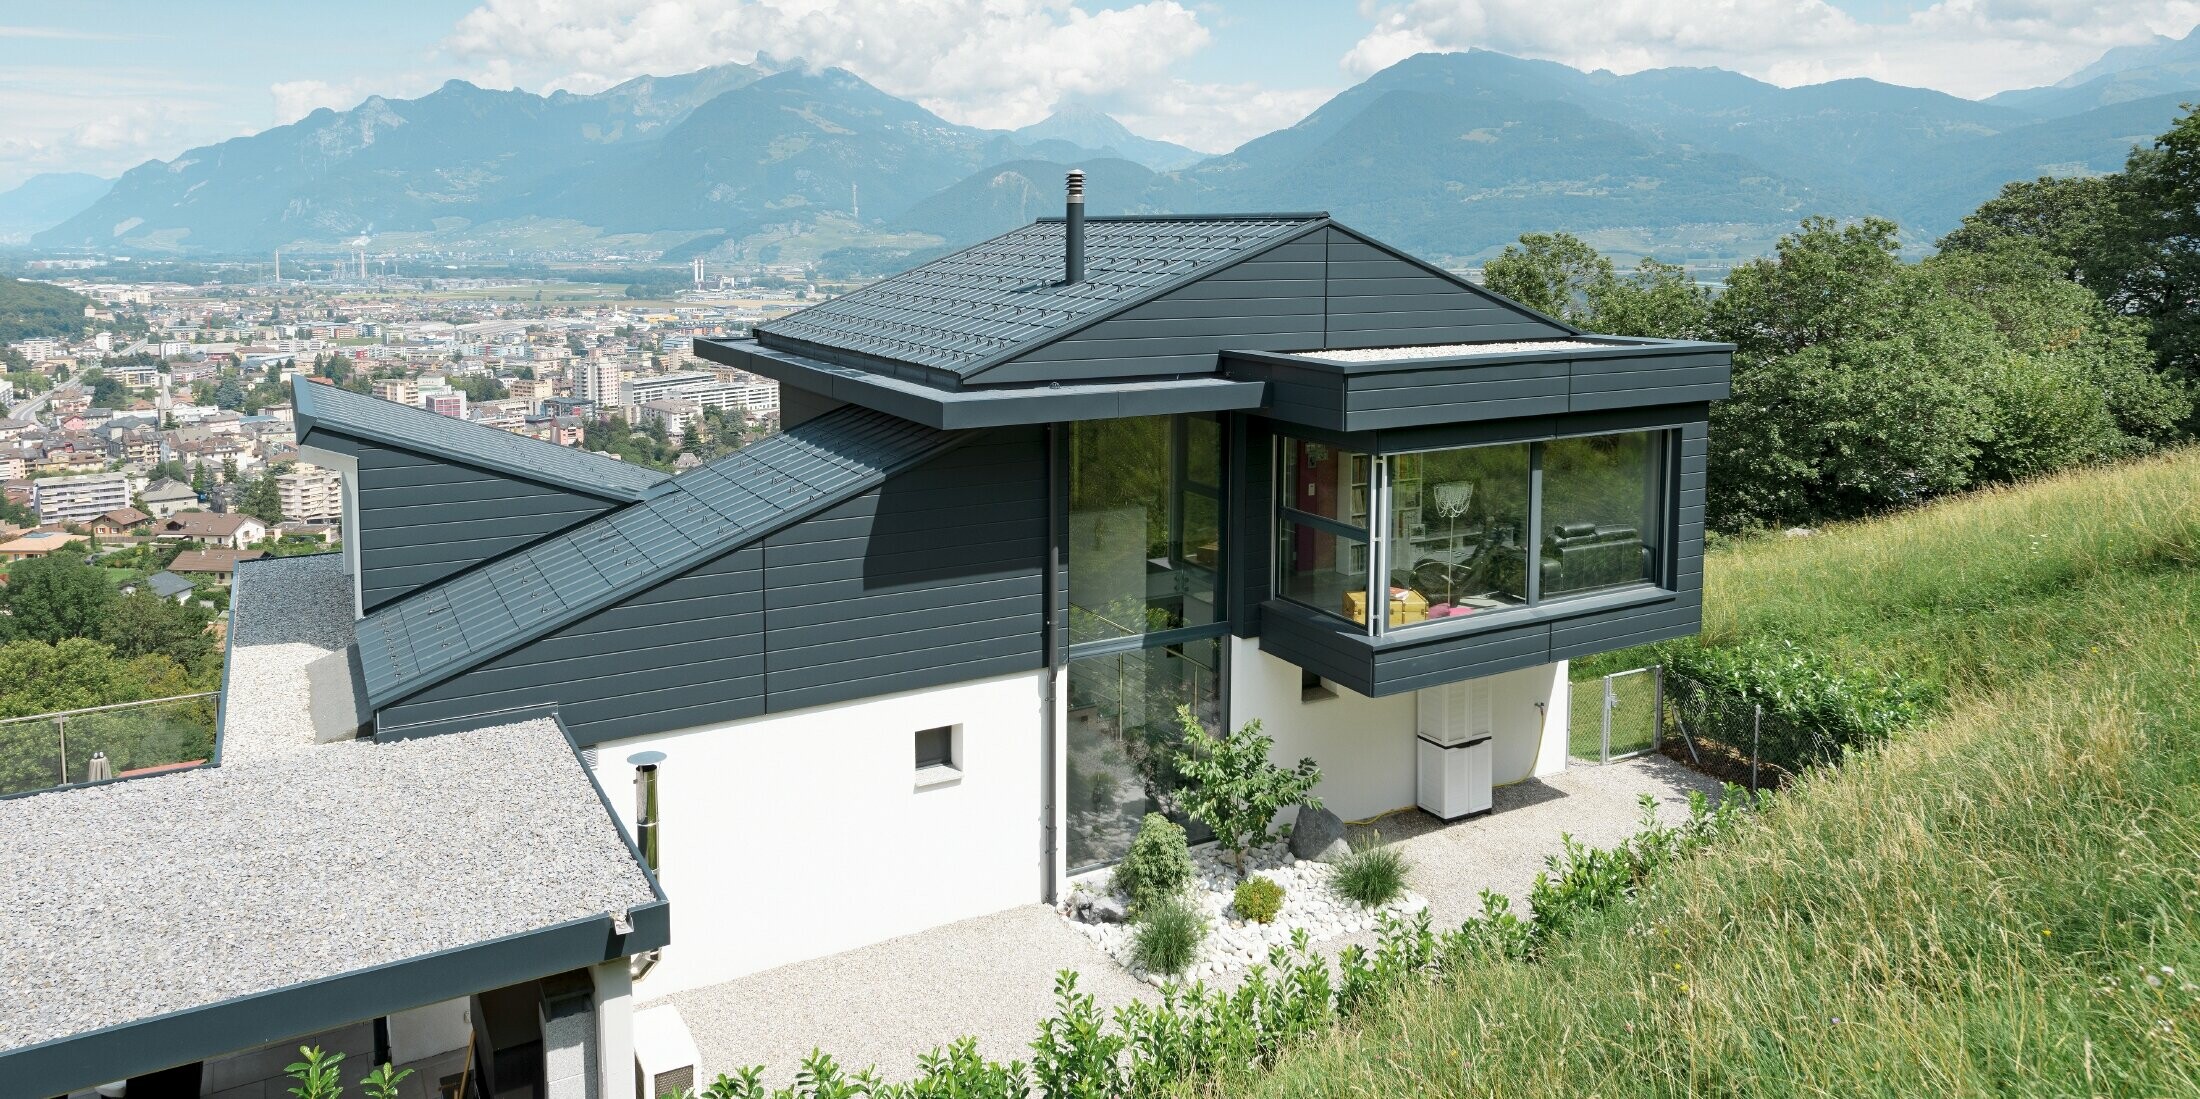 Die Fassade des Einfamilienhauses im Schweizer Ort Choëx ist mit PREFA Sidings in der Farbe P.10 Anthrazit bekleidet. Das Dach wurde mit den bewährten PREFA Dachplatten, ebenfalls in Anthrazit, gedeckt.